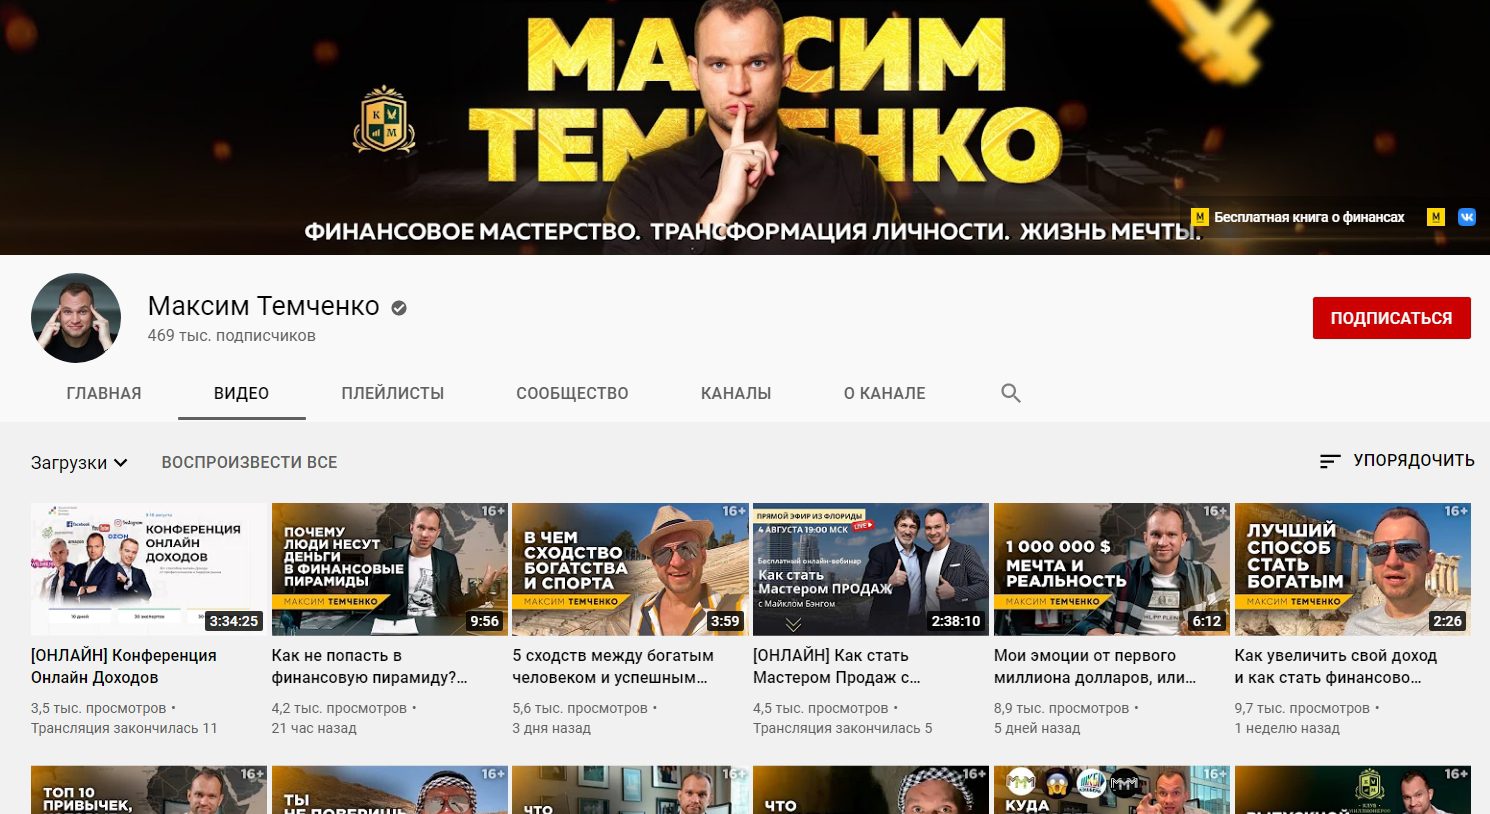 Ютуб канал Максима Темченко